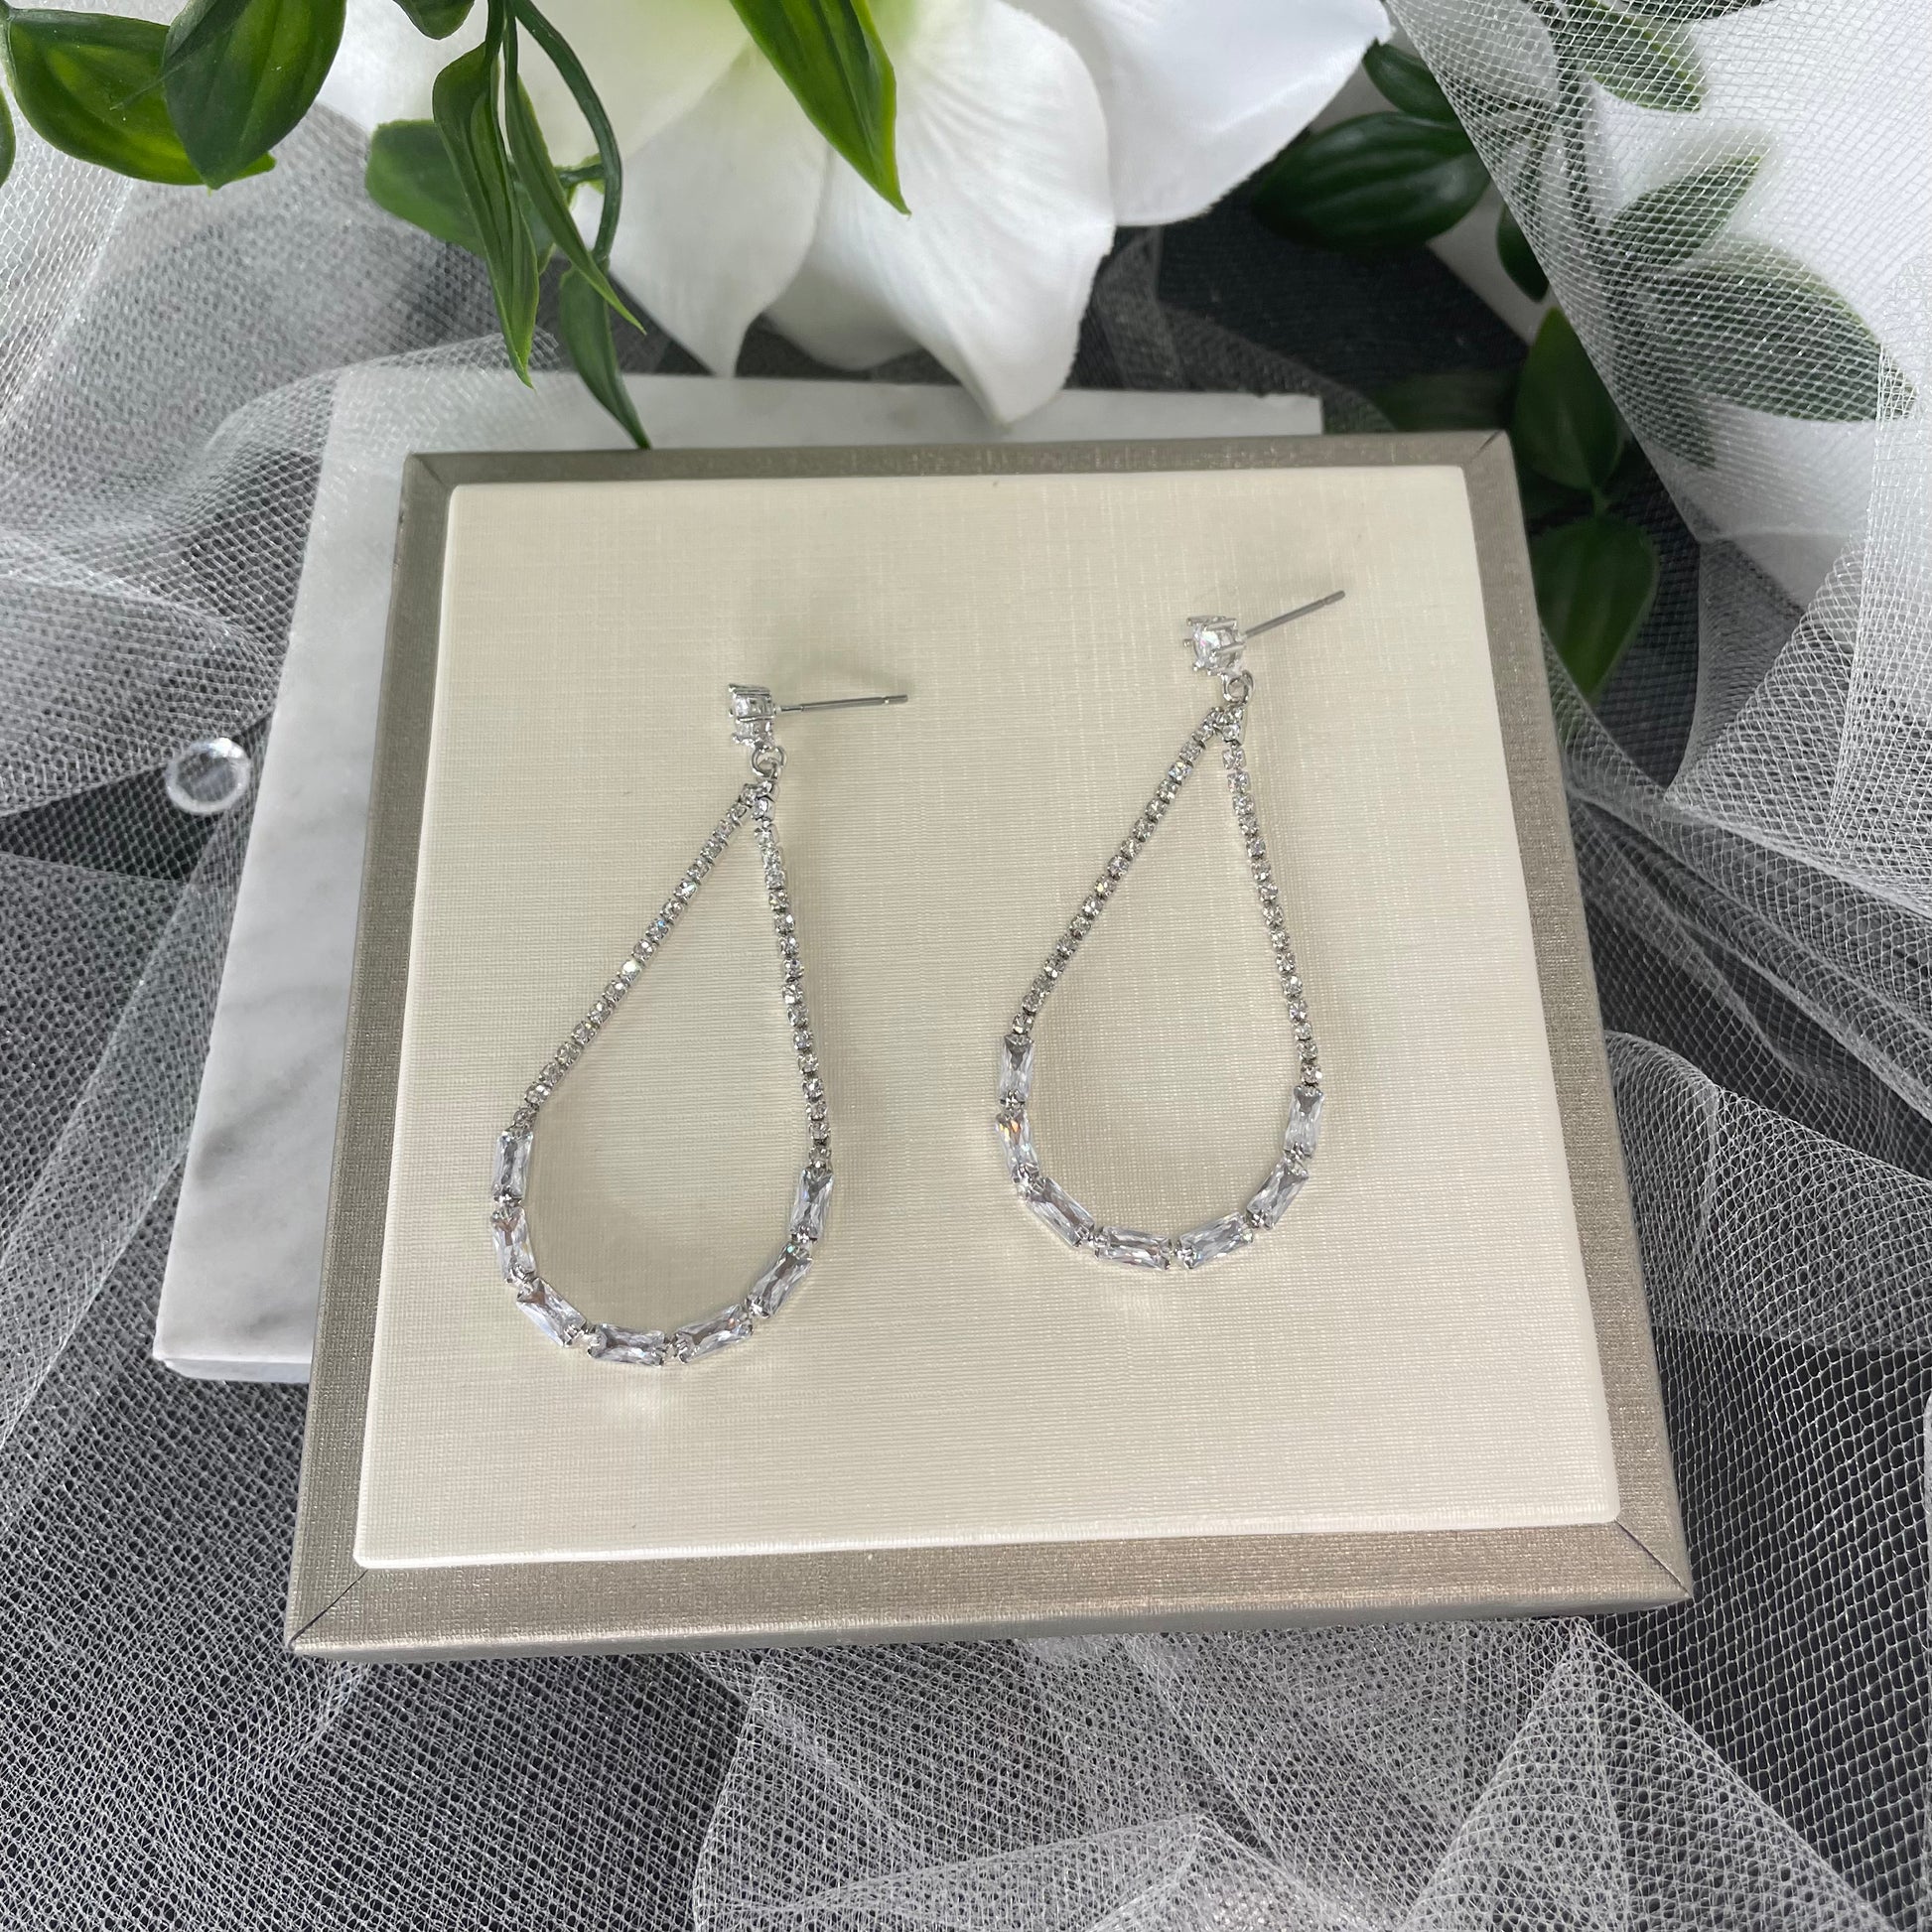 Elegant Andorra teardrop hoop bridal earrings with crystals and diamantés.